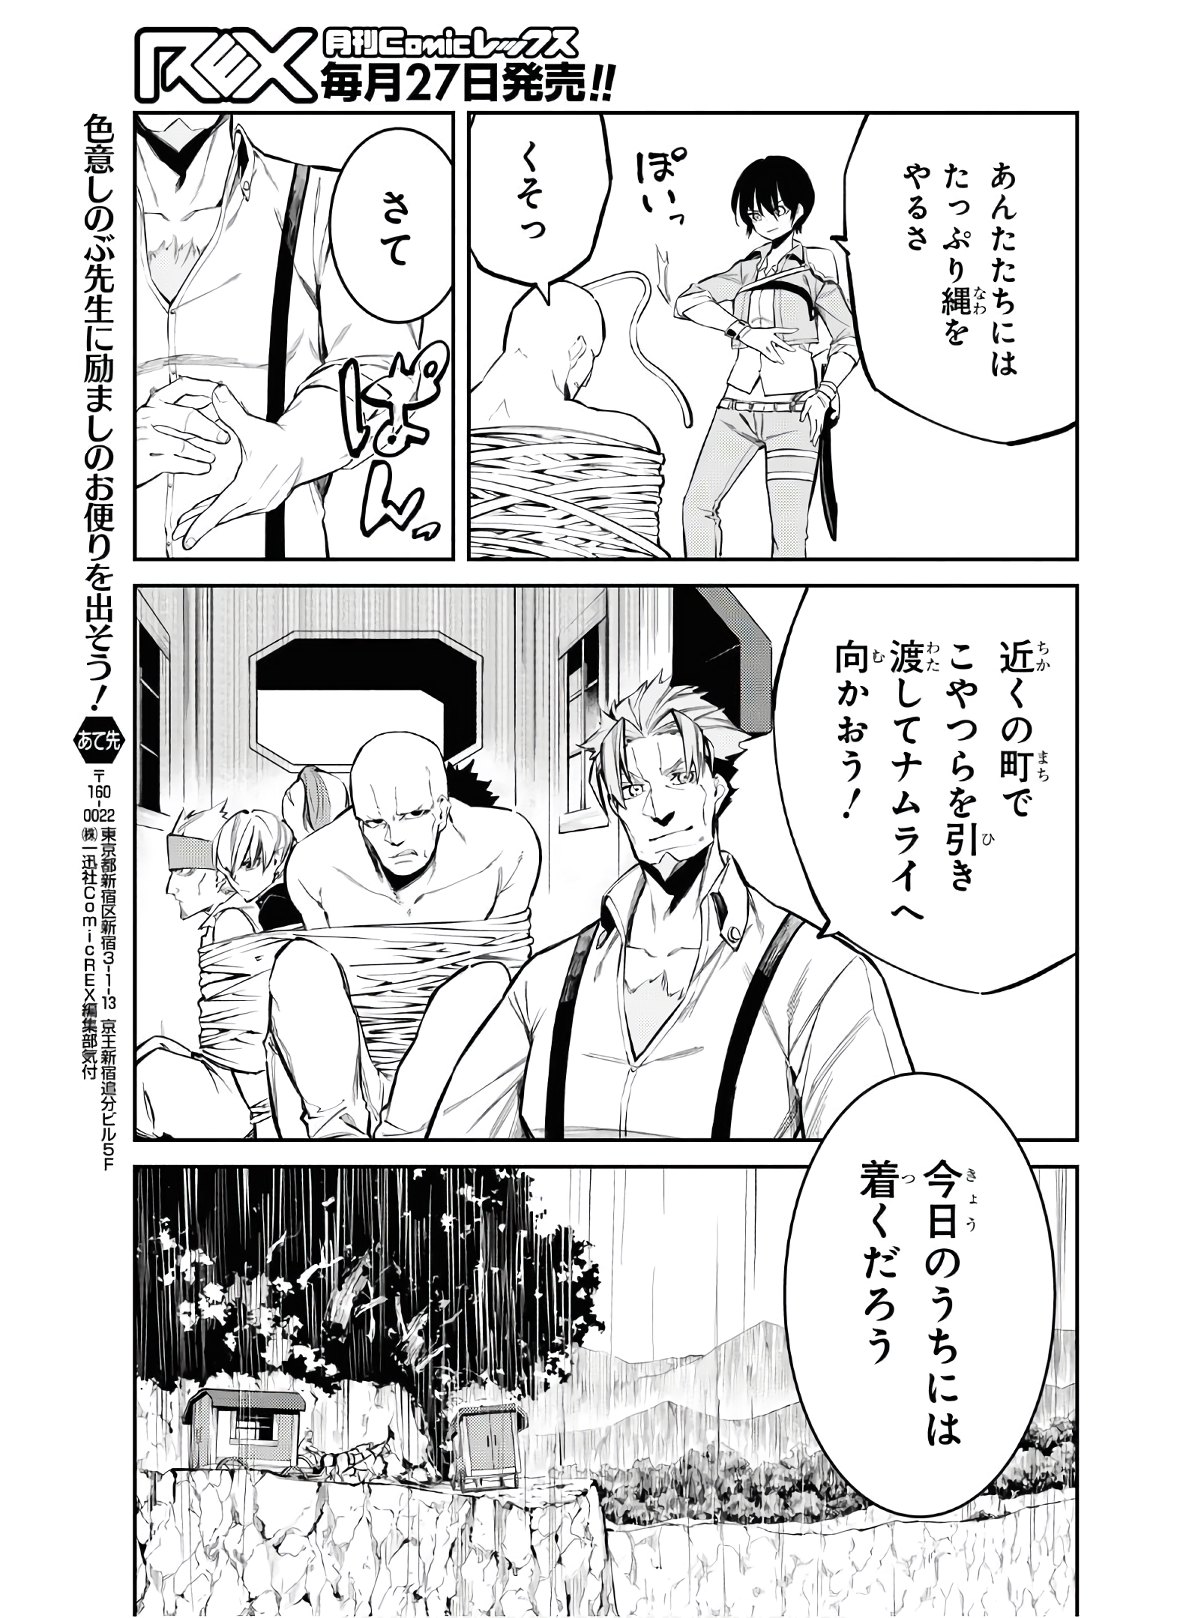 Maryoku 0 de Saikyou no Daikenja ~Sore wa Mahou dewa Nai, Butsuri da!~ - Chapter 4 - Page 27